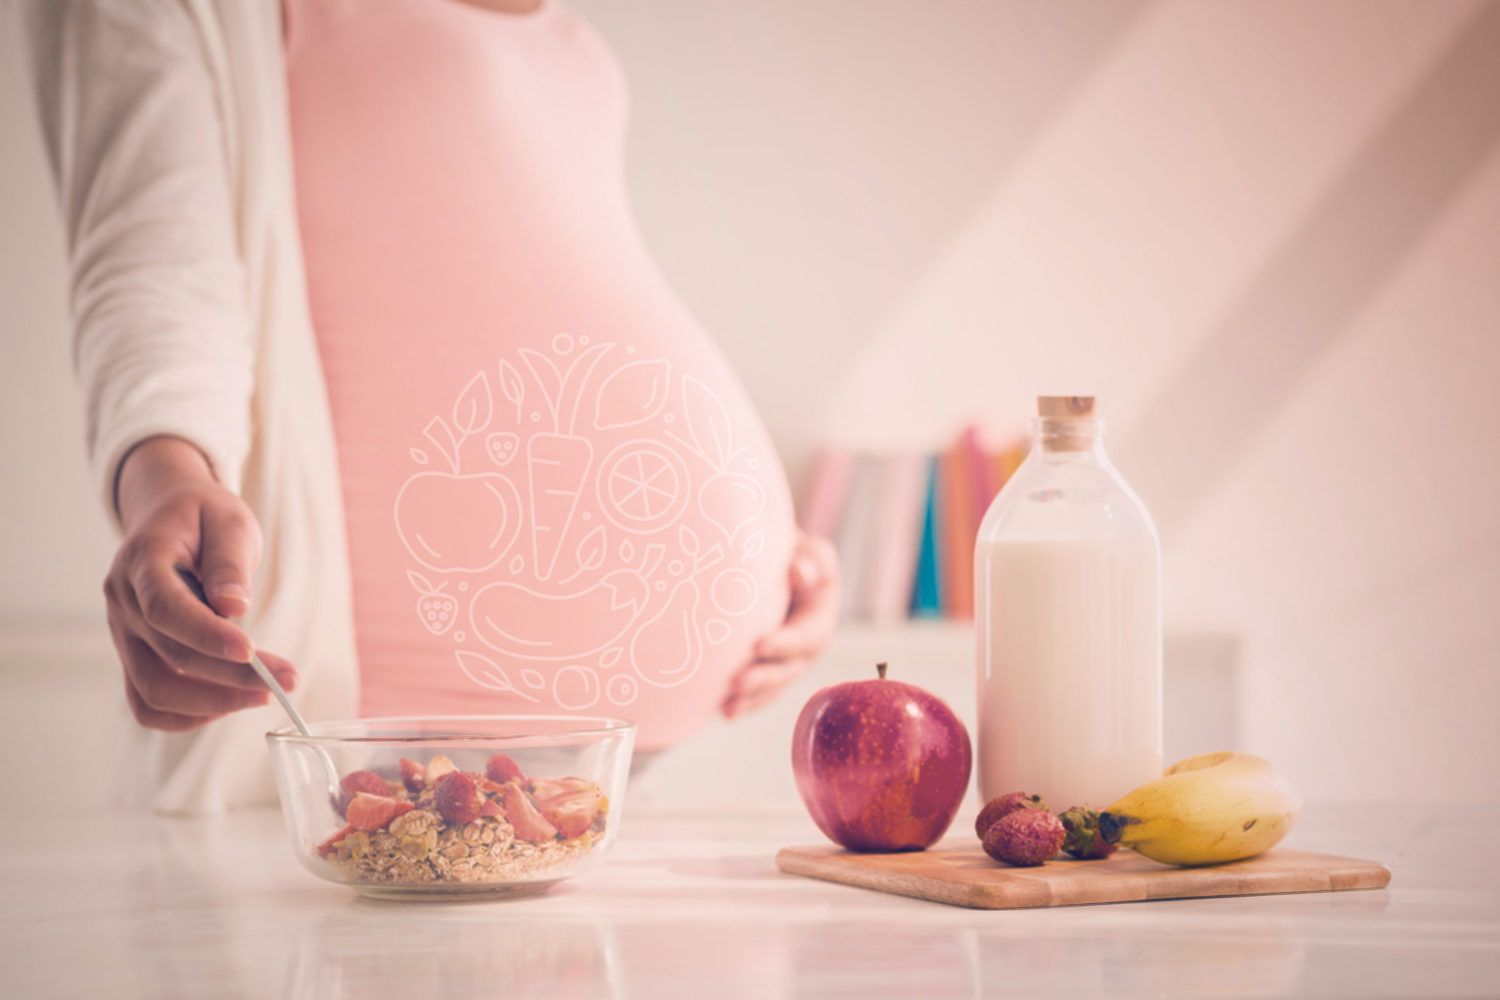 Gesunde Ernährung in der Schwangerschaft: nicht mehr aber besser essen